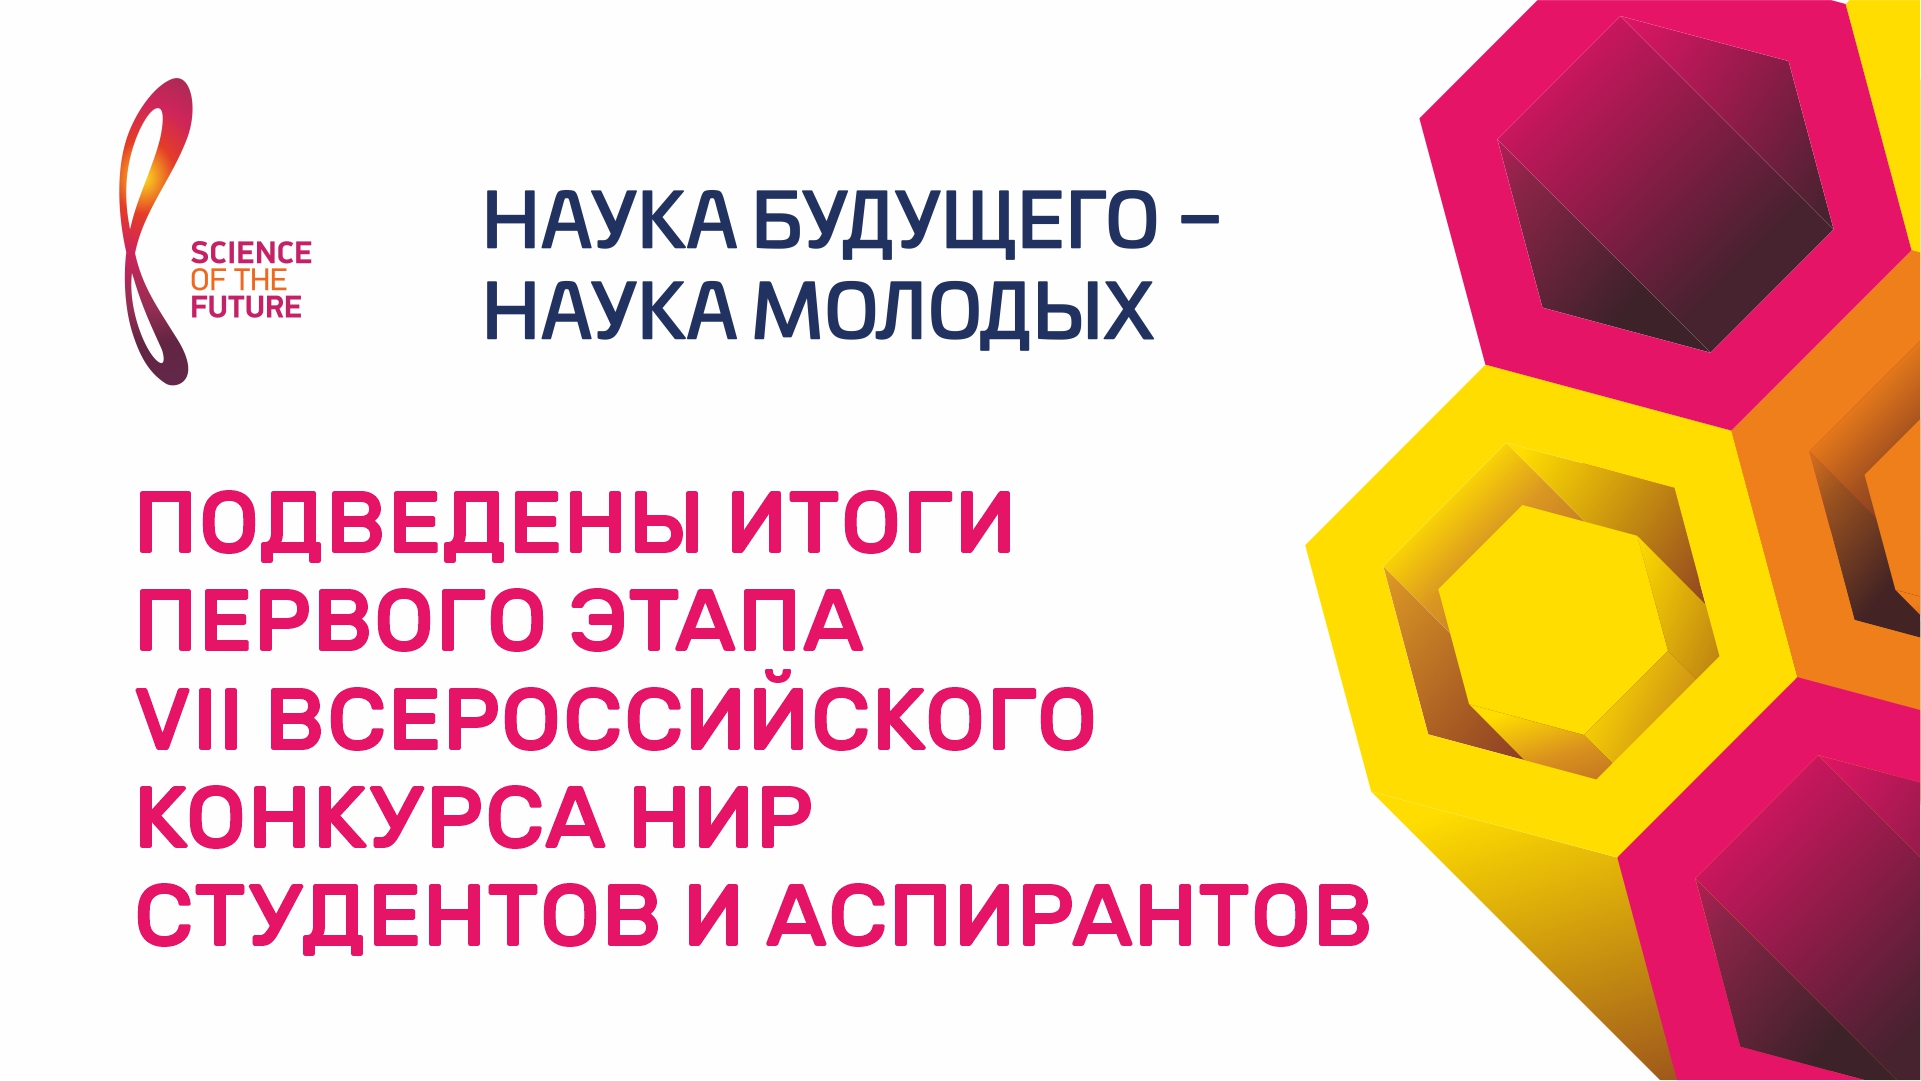 Более 3,4 тыс. заявок от студентов и аспирантов поступило на VII Всероссийский конкурс «Наука будущего — наука молодых»